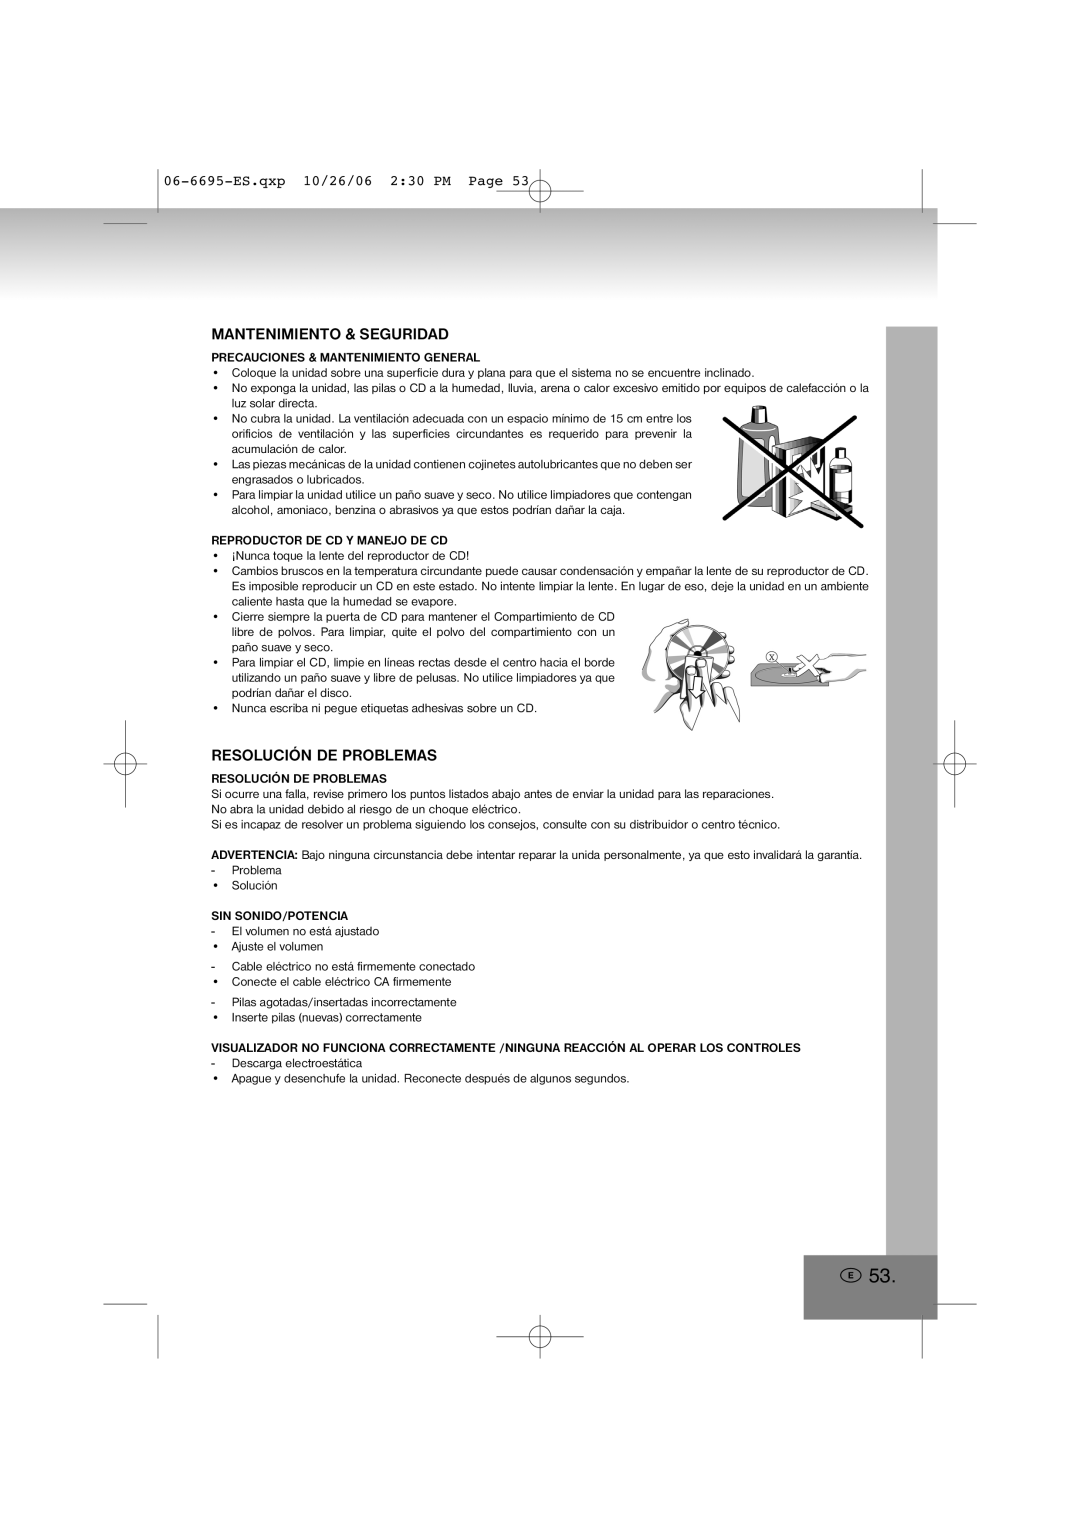 Elta manual Mantenimiento & Seguridad, Resolución De Problemas, 06-6695-ES.qxp10/26/06 2 30 PM Page 